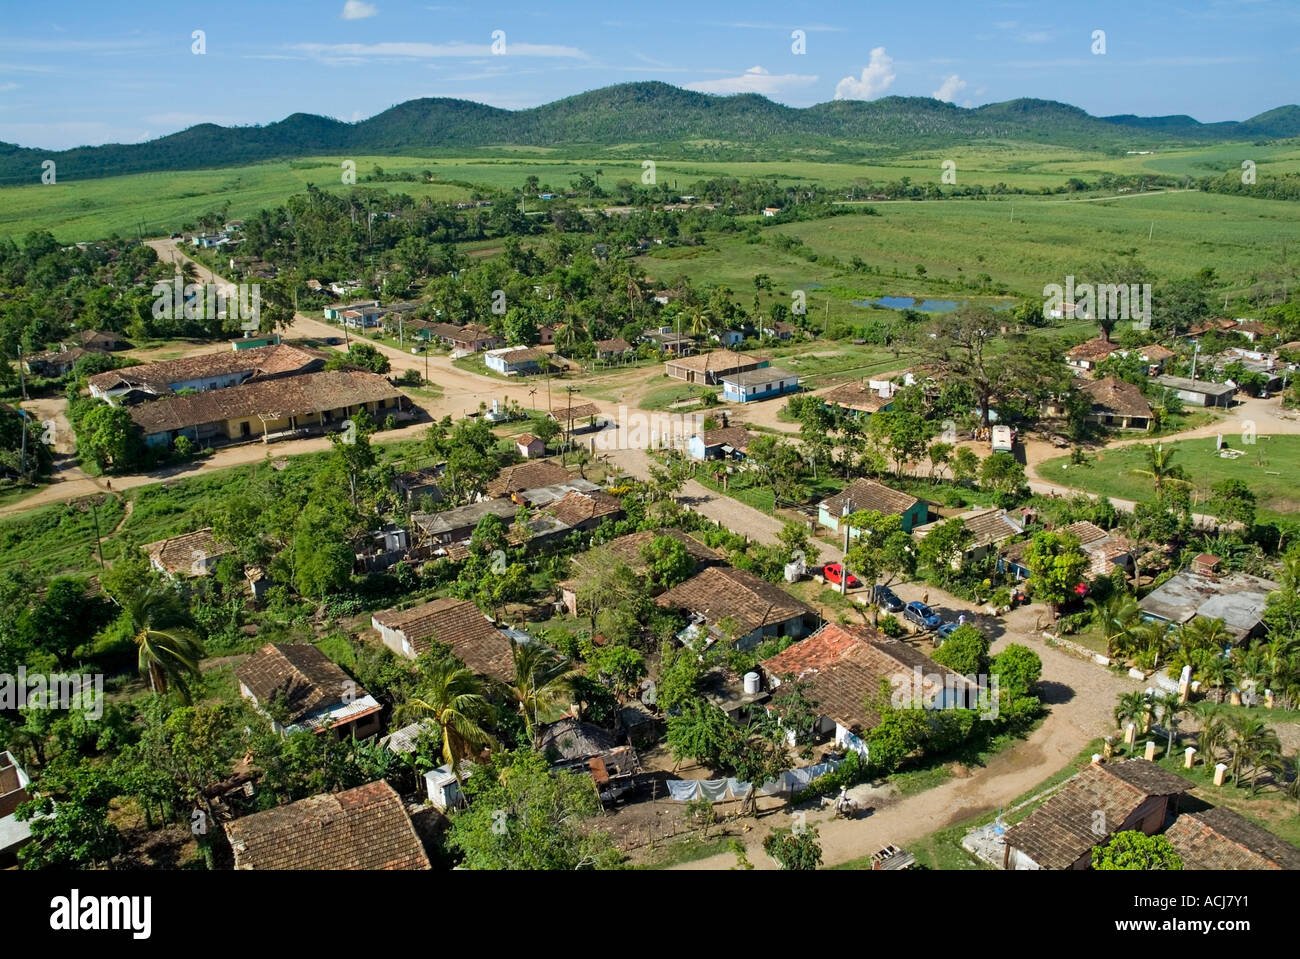 Ehemalige Zuckerrohr-Plantage Manaca-Iznaga Anwesen mit der Escambray Sierra in der Ferne, Valle De Los Ingenios, Kuba. Stockfoto